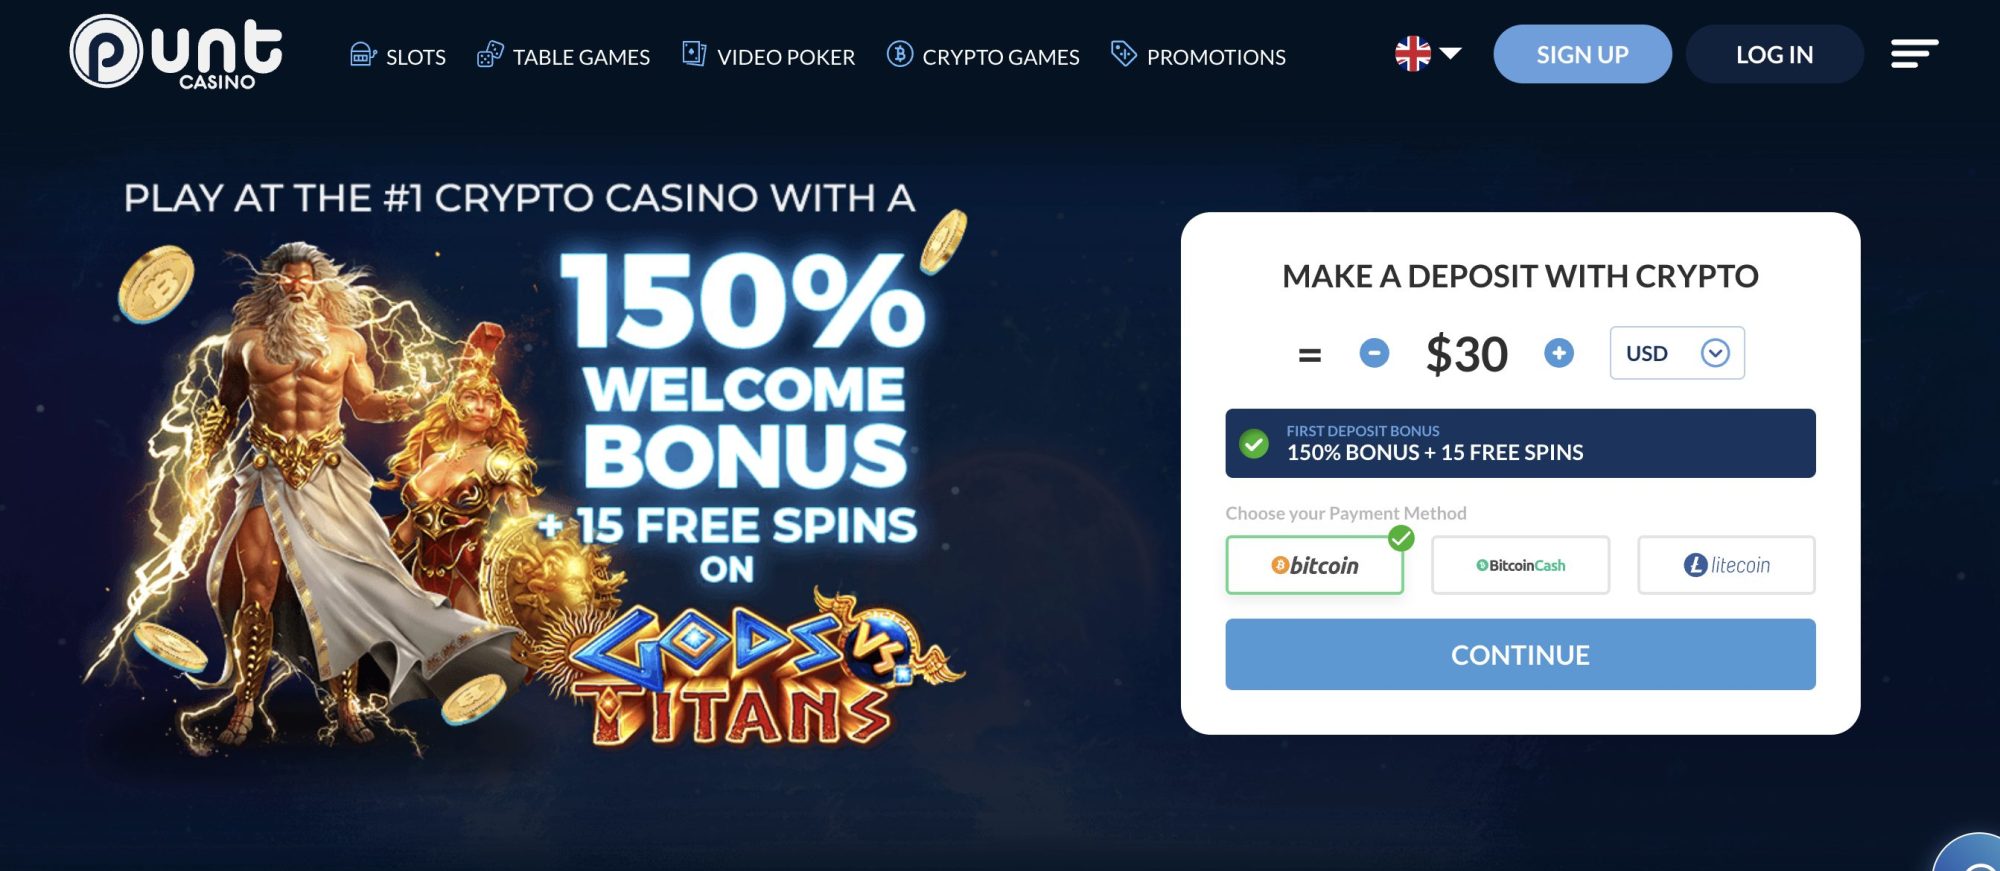 Punt Casino welcome bonus